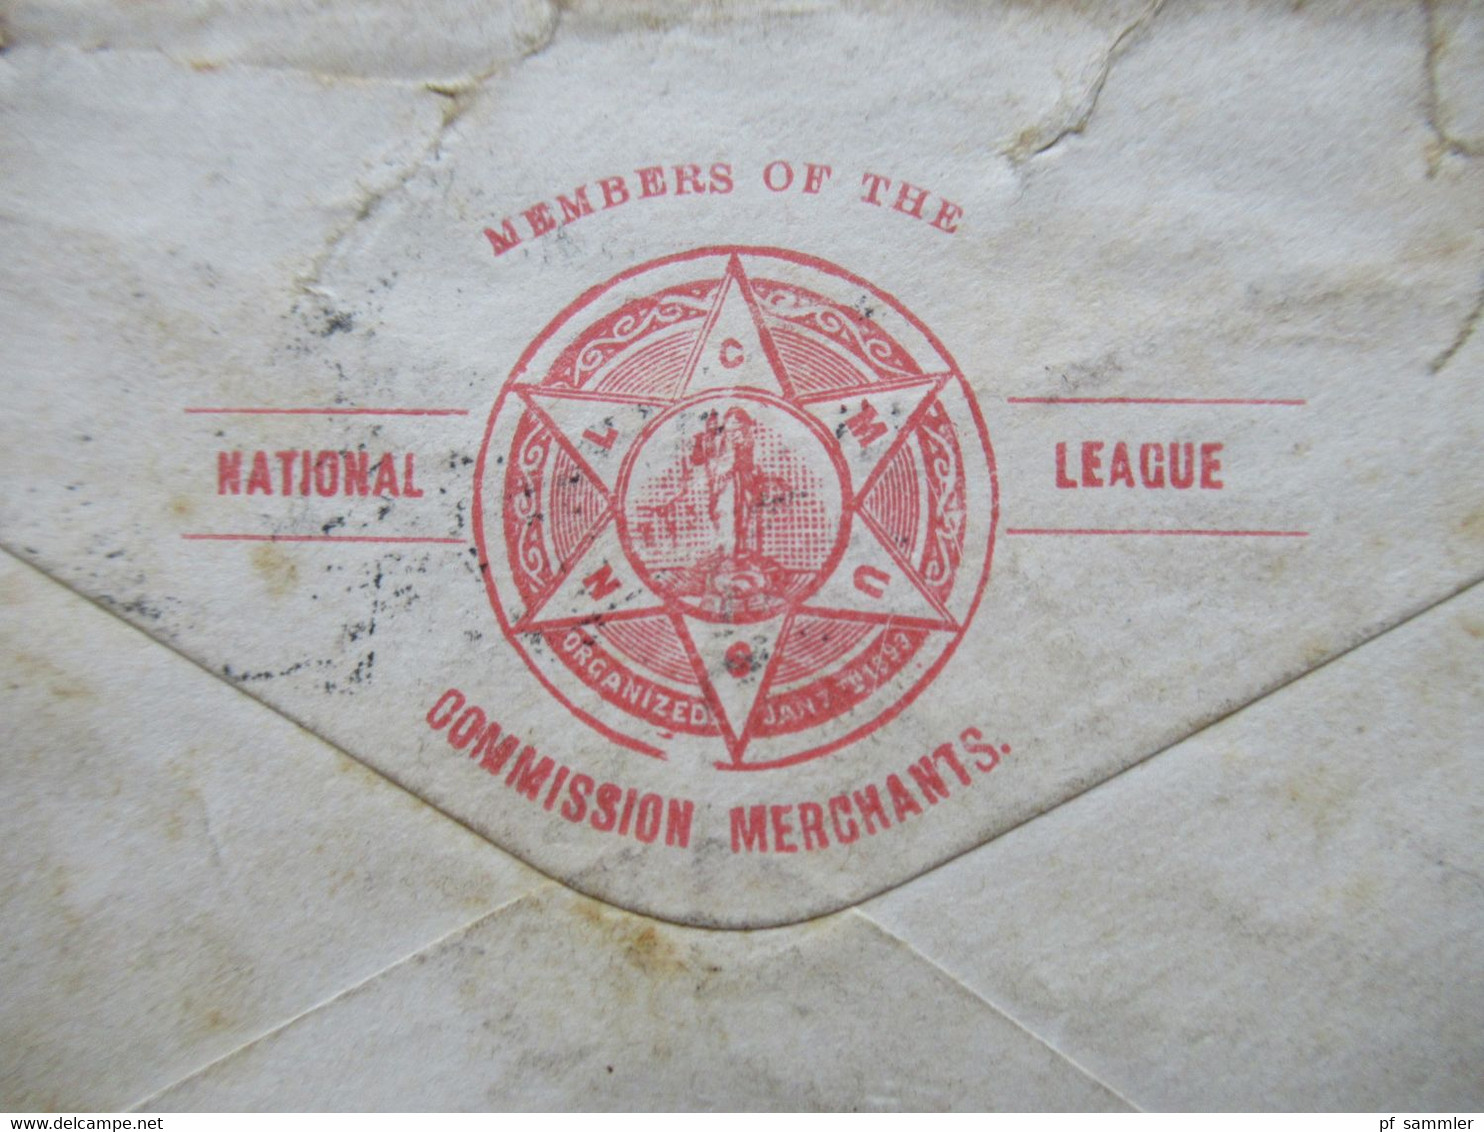 USA 1896 GA Umschlag mit 3 ZuF National League Commission Merchants nach Luxemburg Esch sur Alzette mit Ank. Stp.